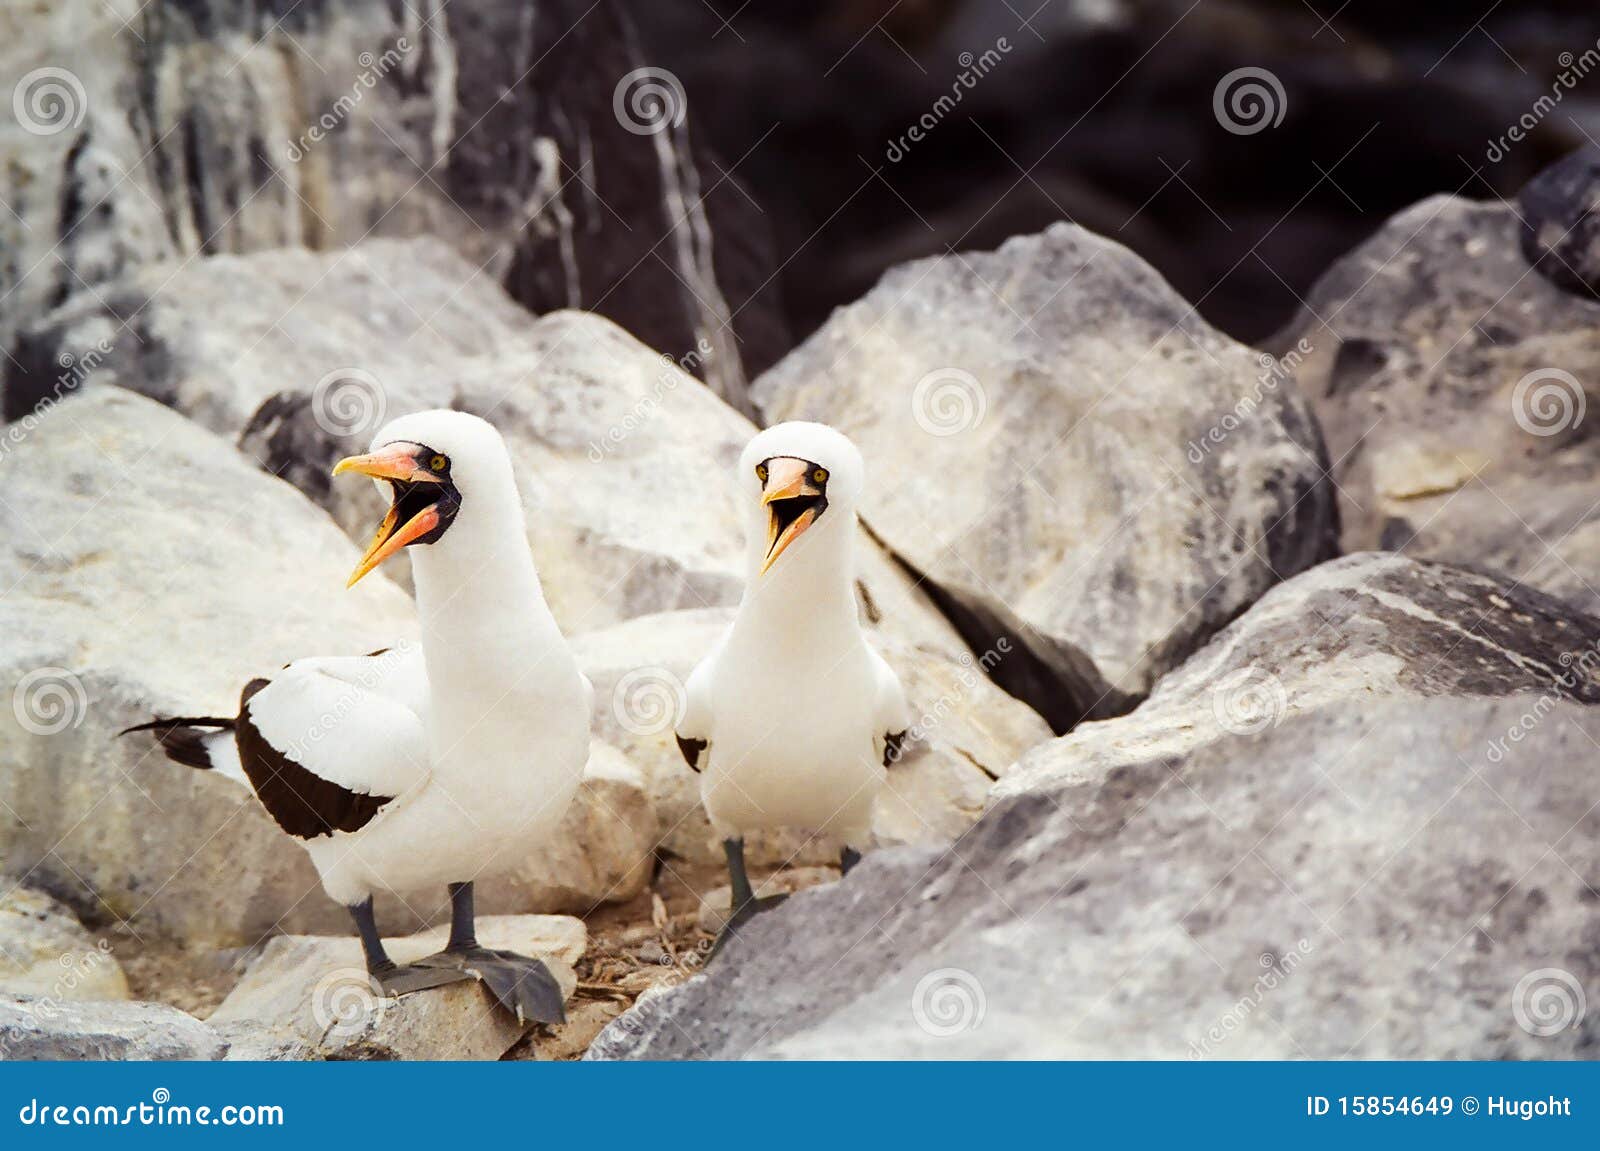 galapagos masked booby